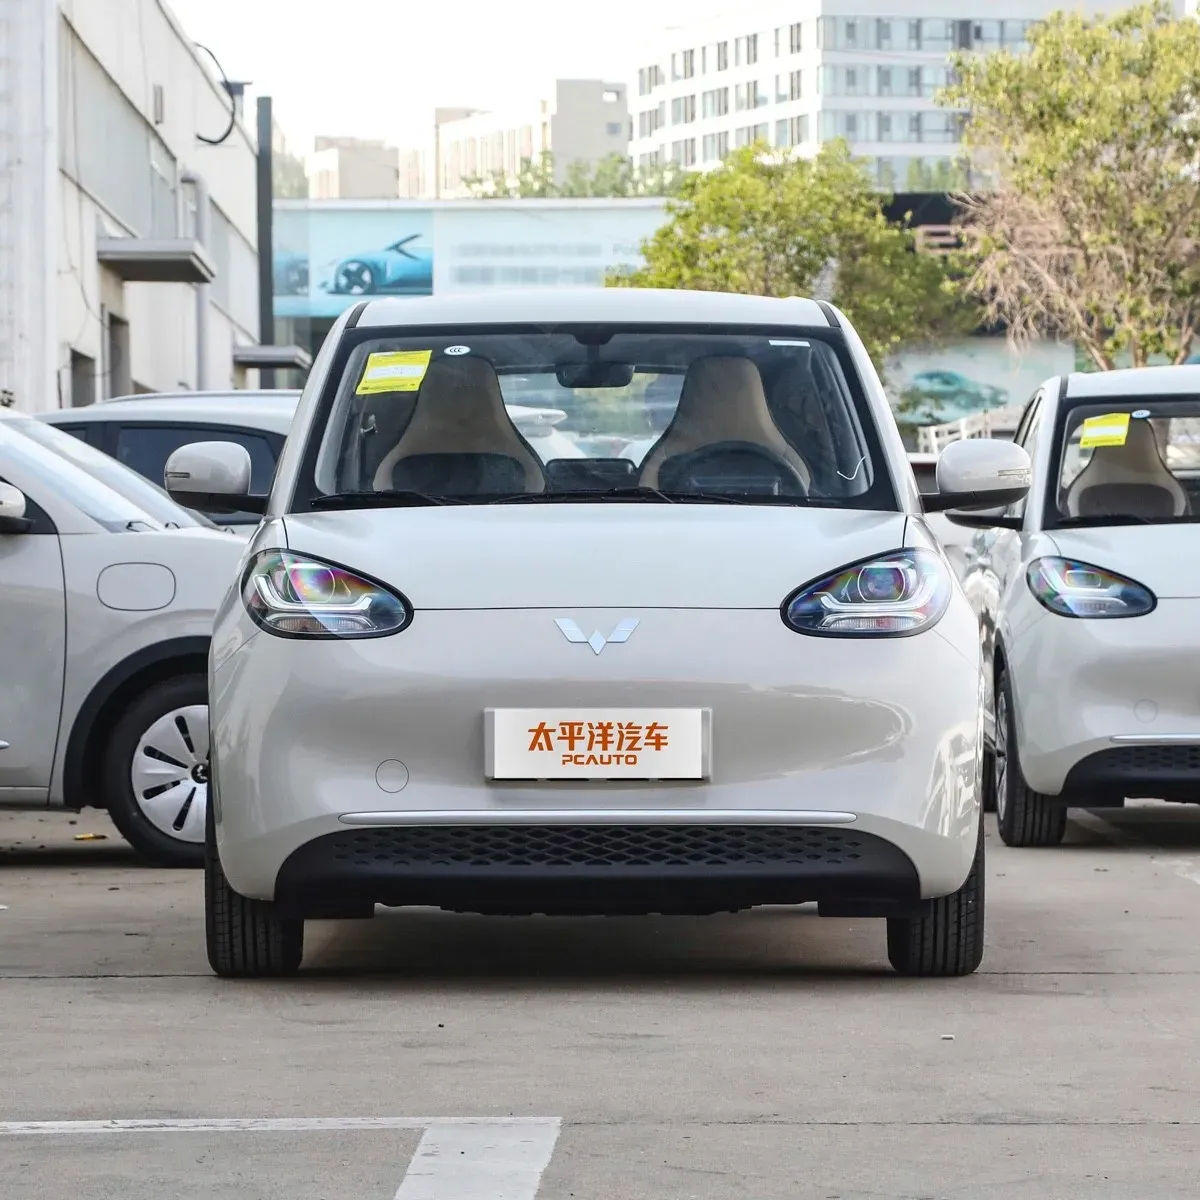 हॉट सेल अवतार 11 इलेक्ट्रिक कार: ईवी मार्केट कार में सबसे लंबे समय तक चलने वाला विकल्प